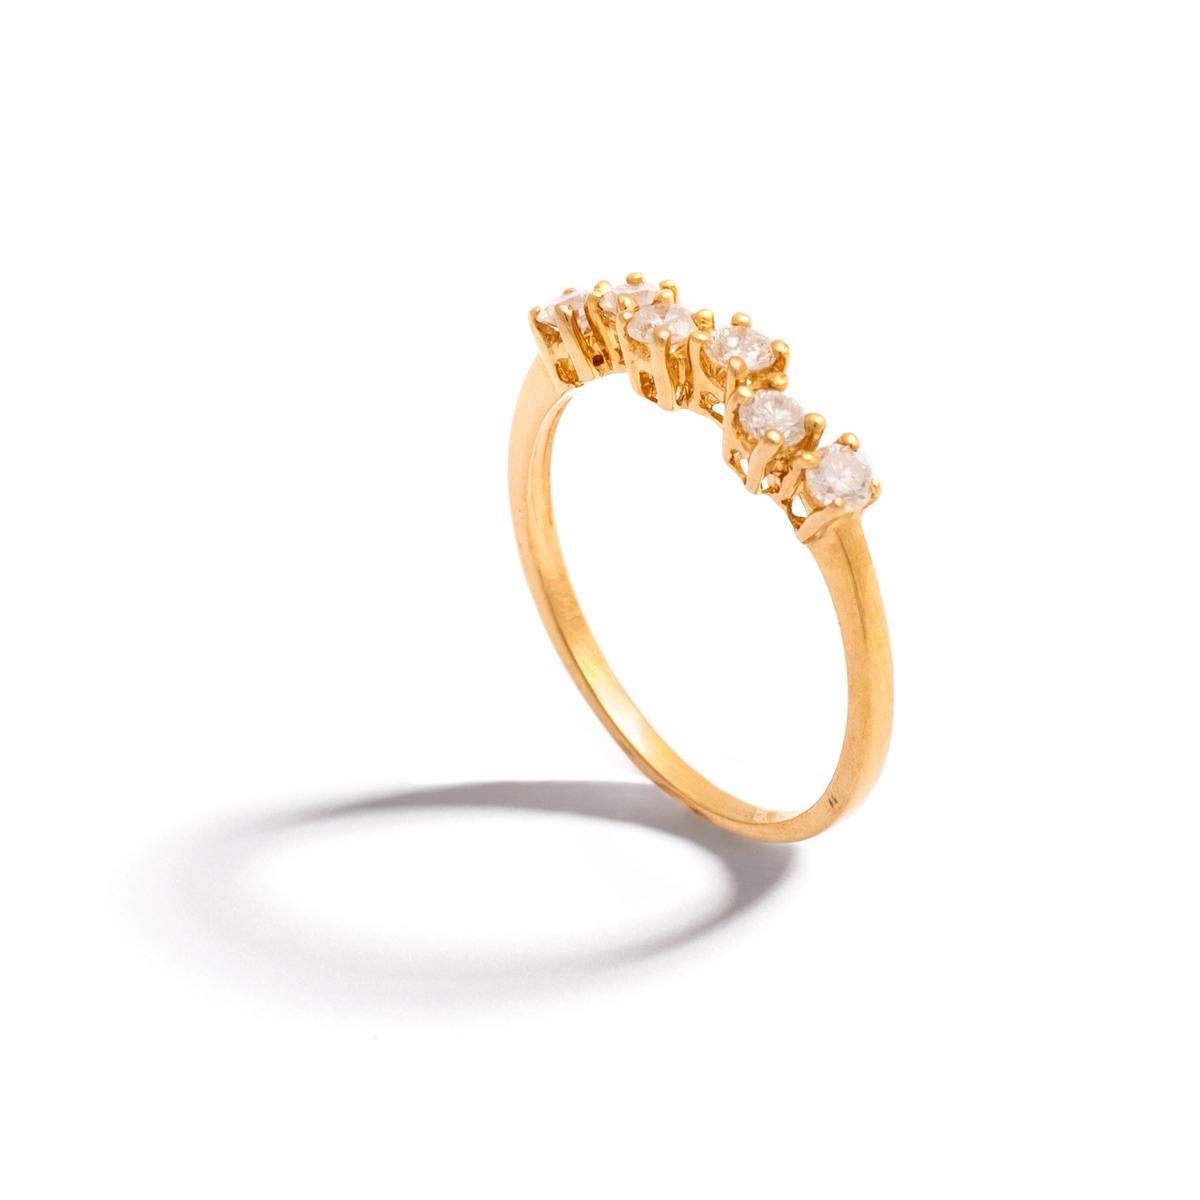 Diamant Rundschliff auf Gelbgold Ring.
Geschätztes Gewicht der Diamanten: 0,42 Karat insgesamt.
Moderner Schnitt. Geschätzte Farbe: H-I und Reinheit: Si.
Ringgröße: 7.
Bruttogewicht: 1,95 Gramm.